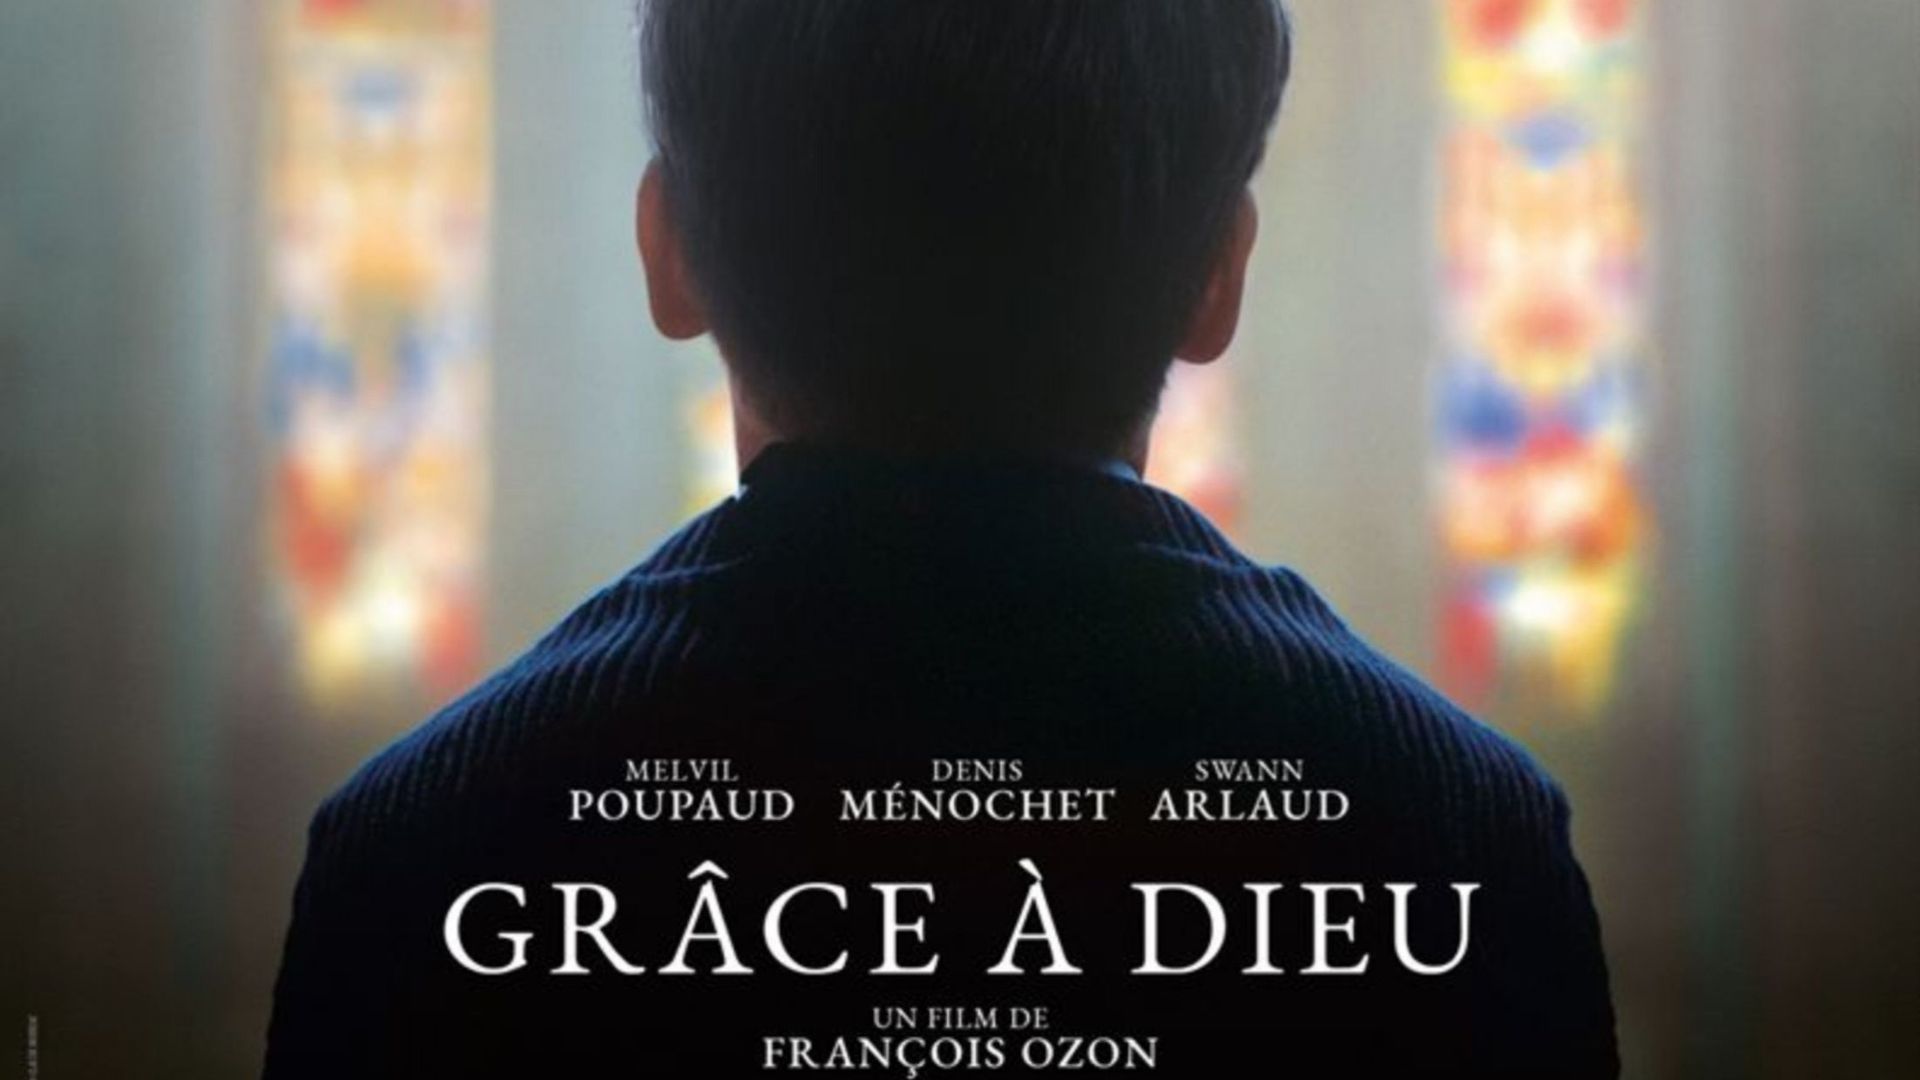 Le film "Grâce à Dieu" autorisé par la justice à sortir en salles en France ce mercredi